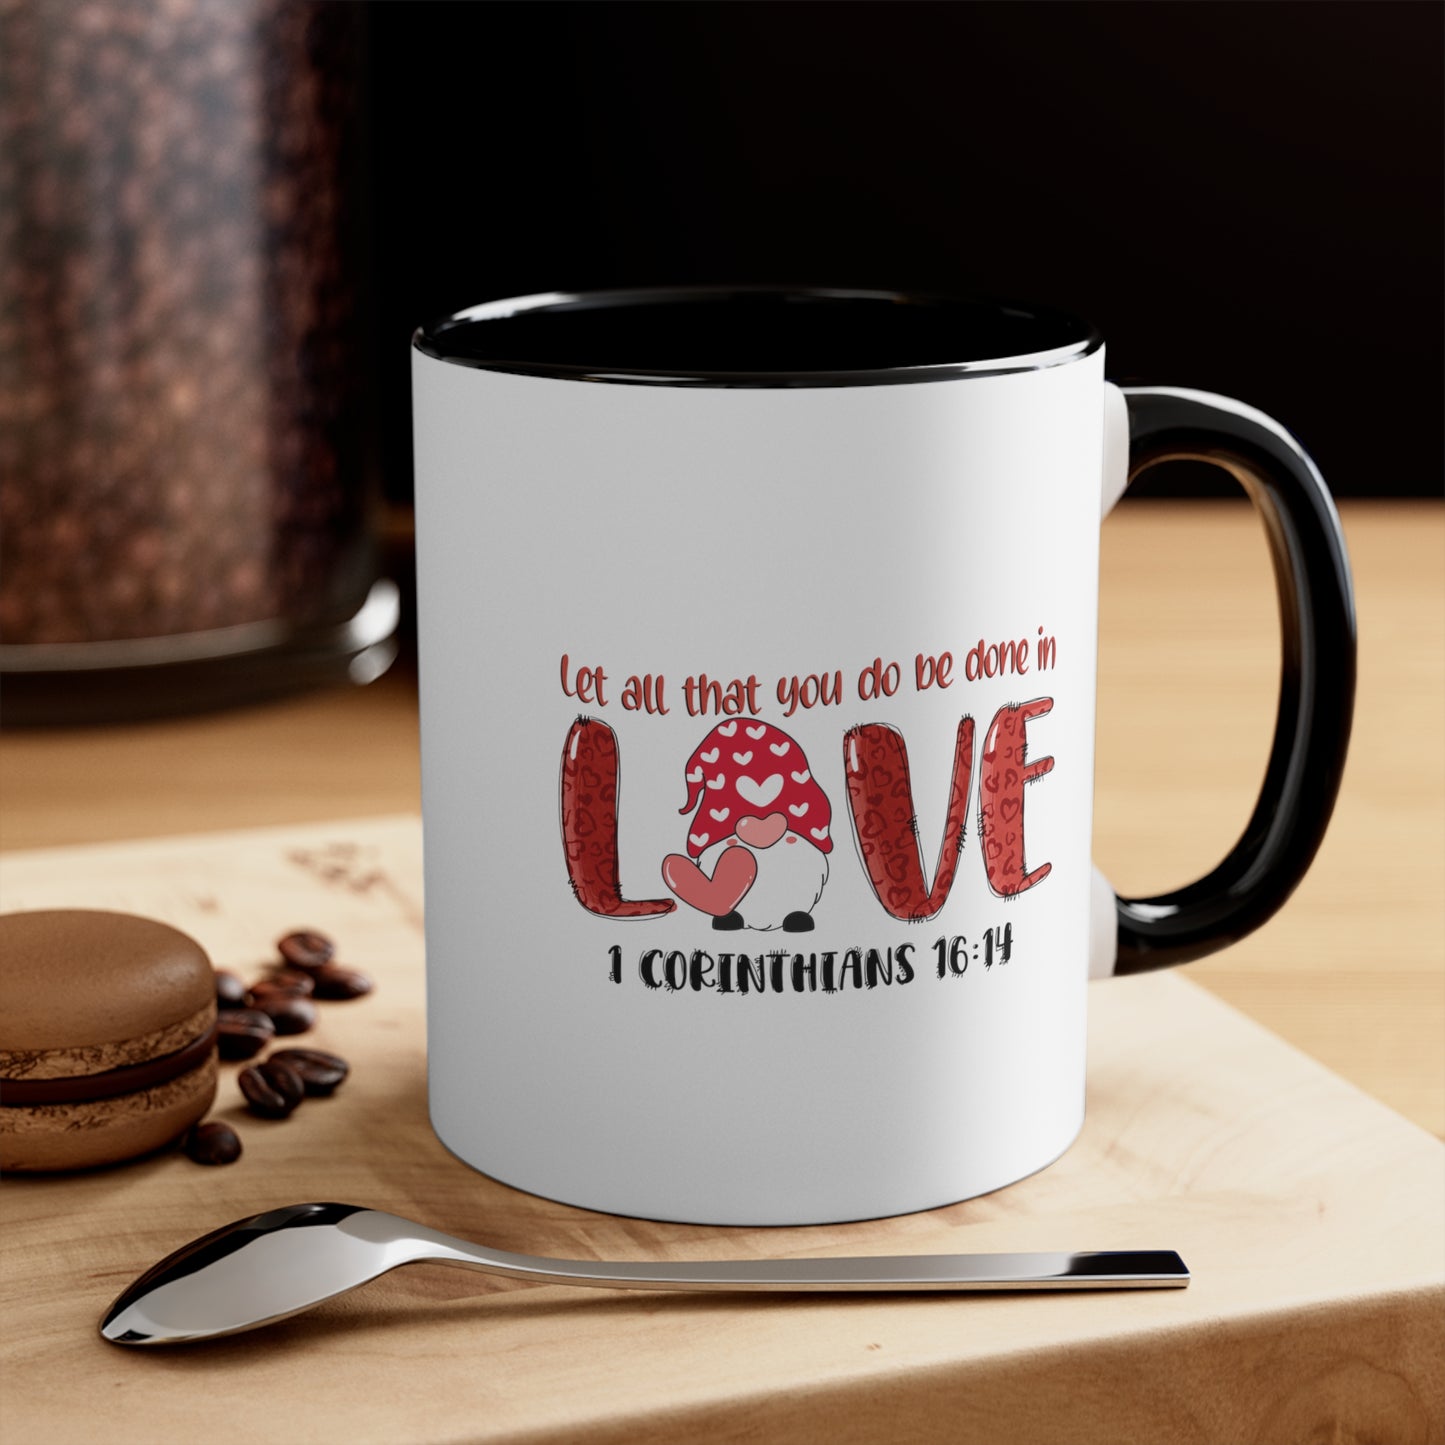 Let all you do - Accent Coffee Mug, 11oz